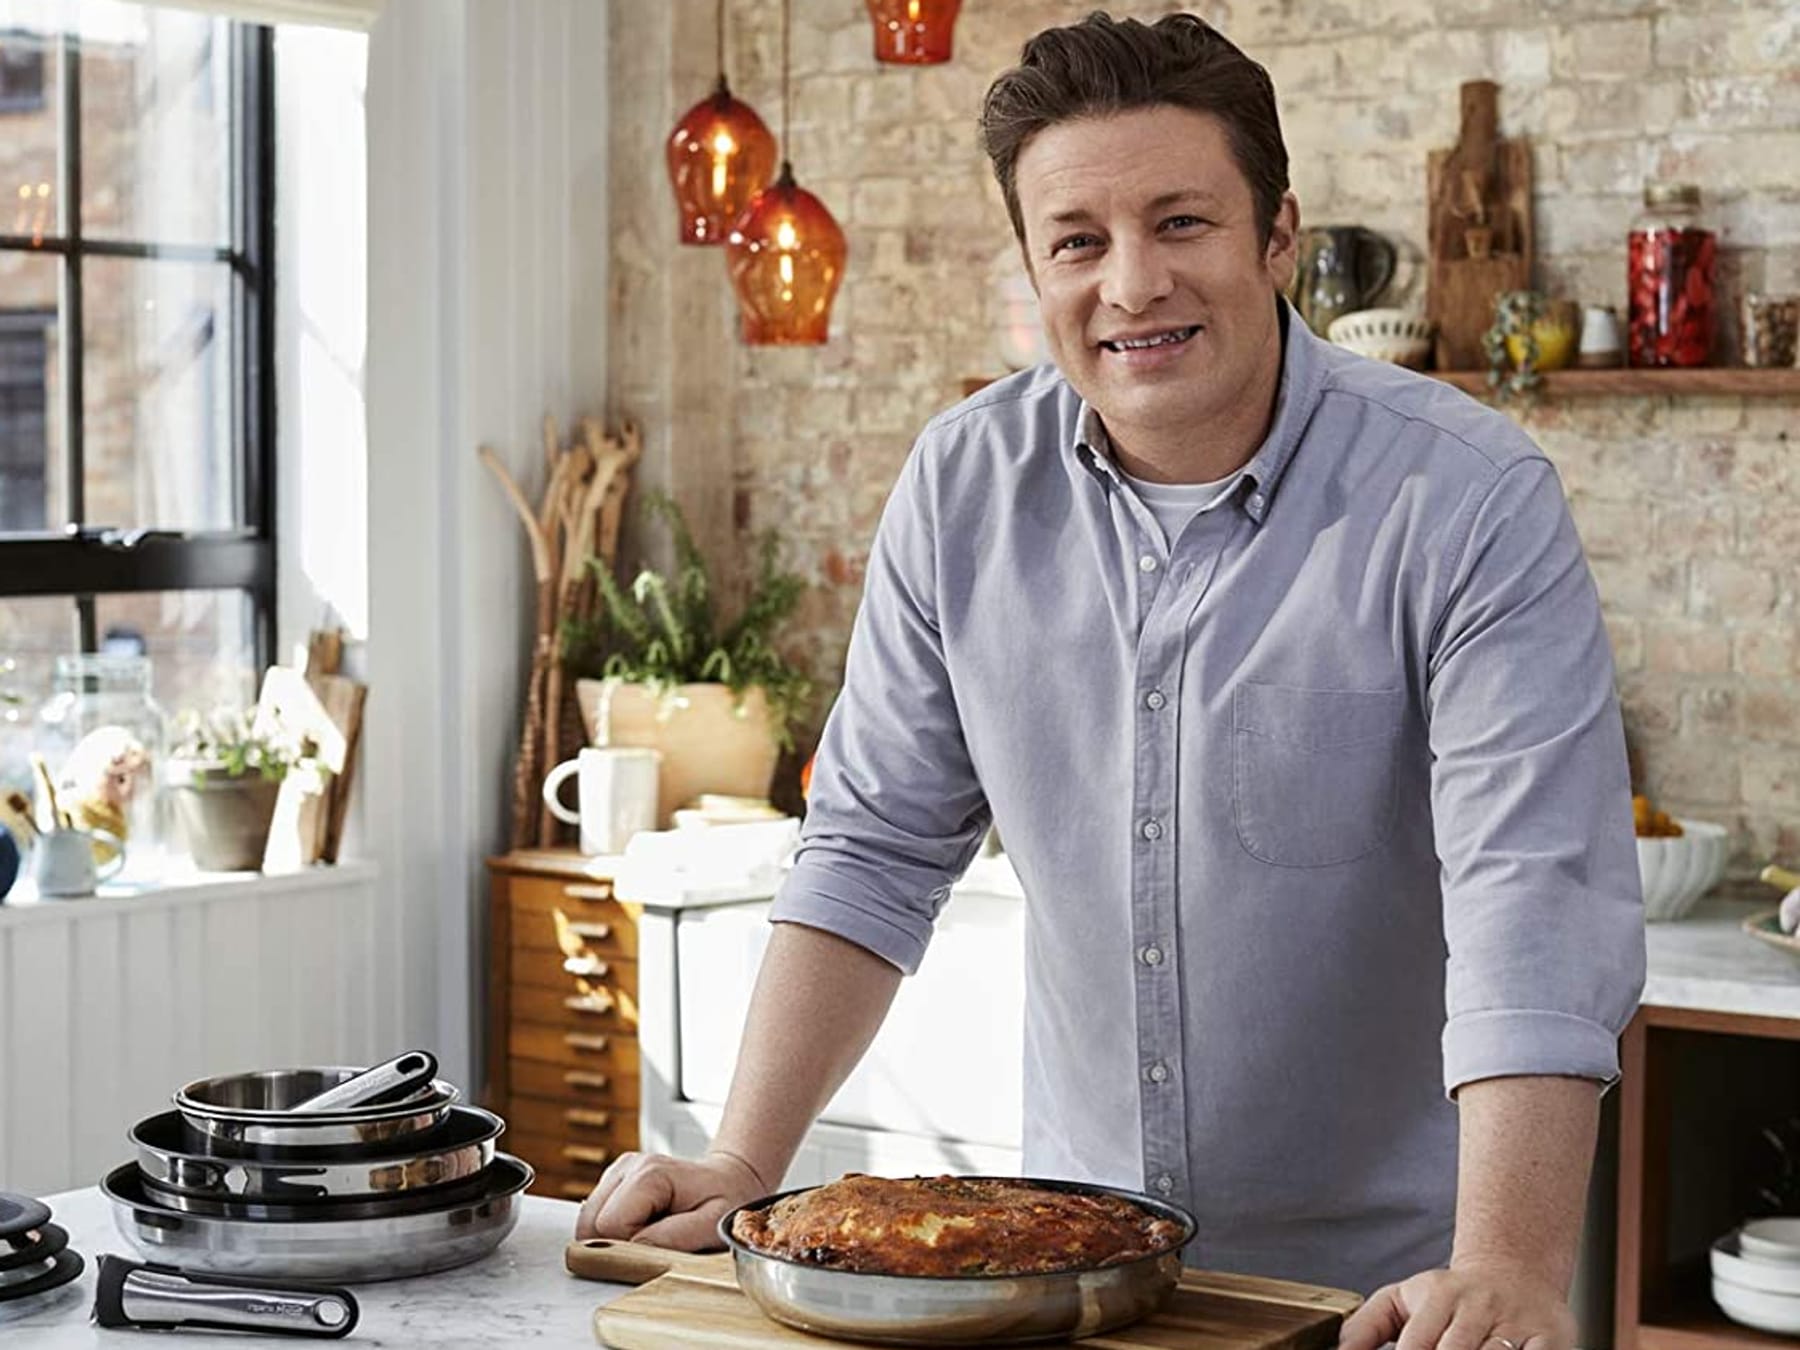 Unter 100 Euro! Jamie Oliver Pfannen von Tefal günstig wie nie bei Amazon